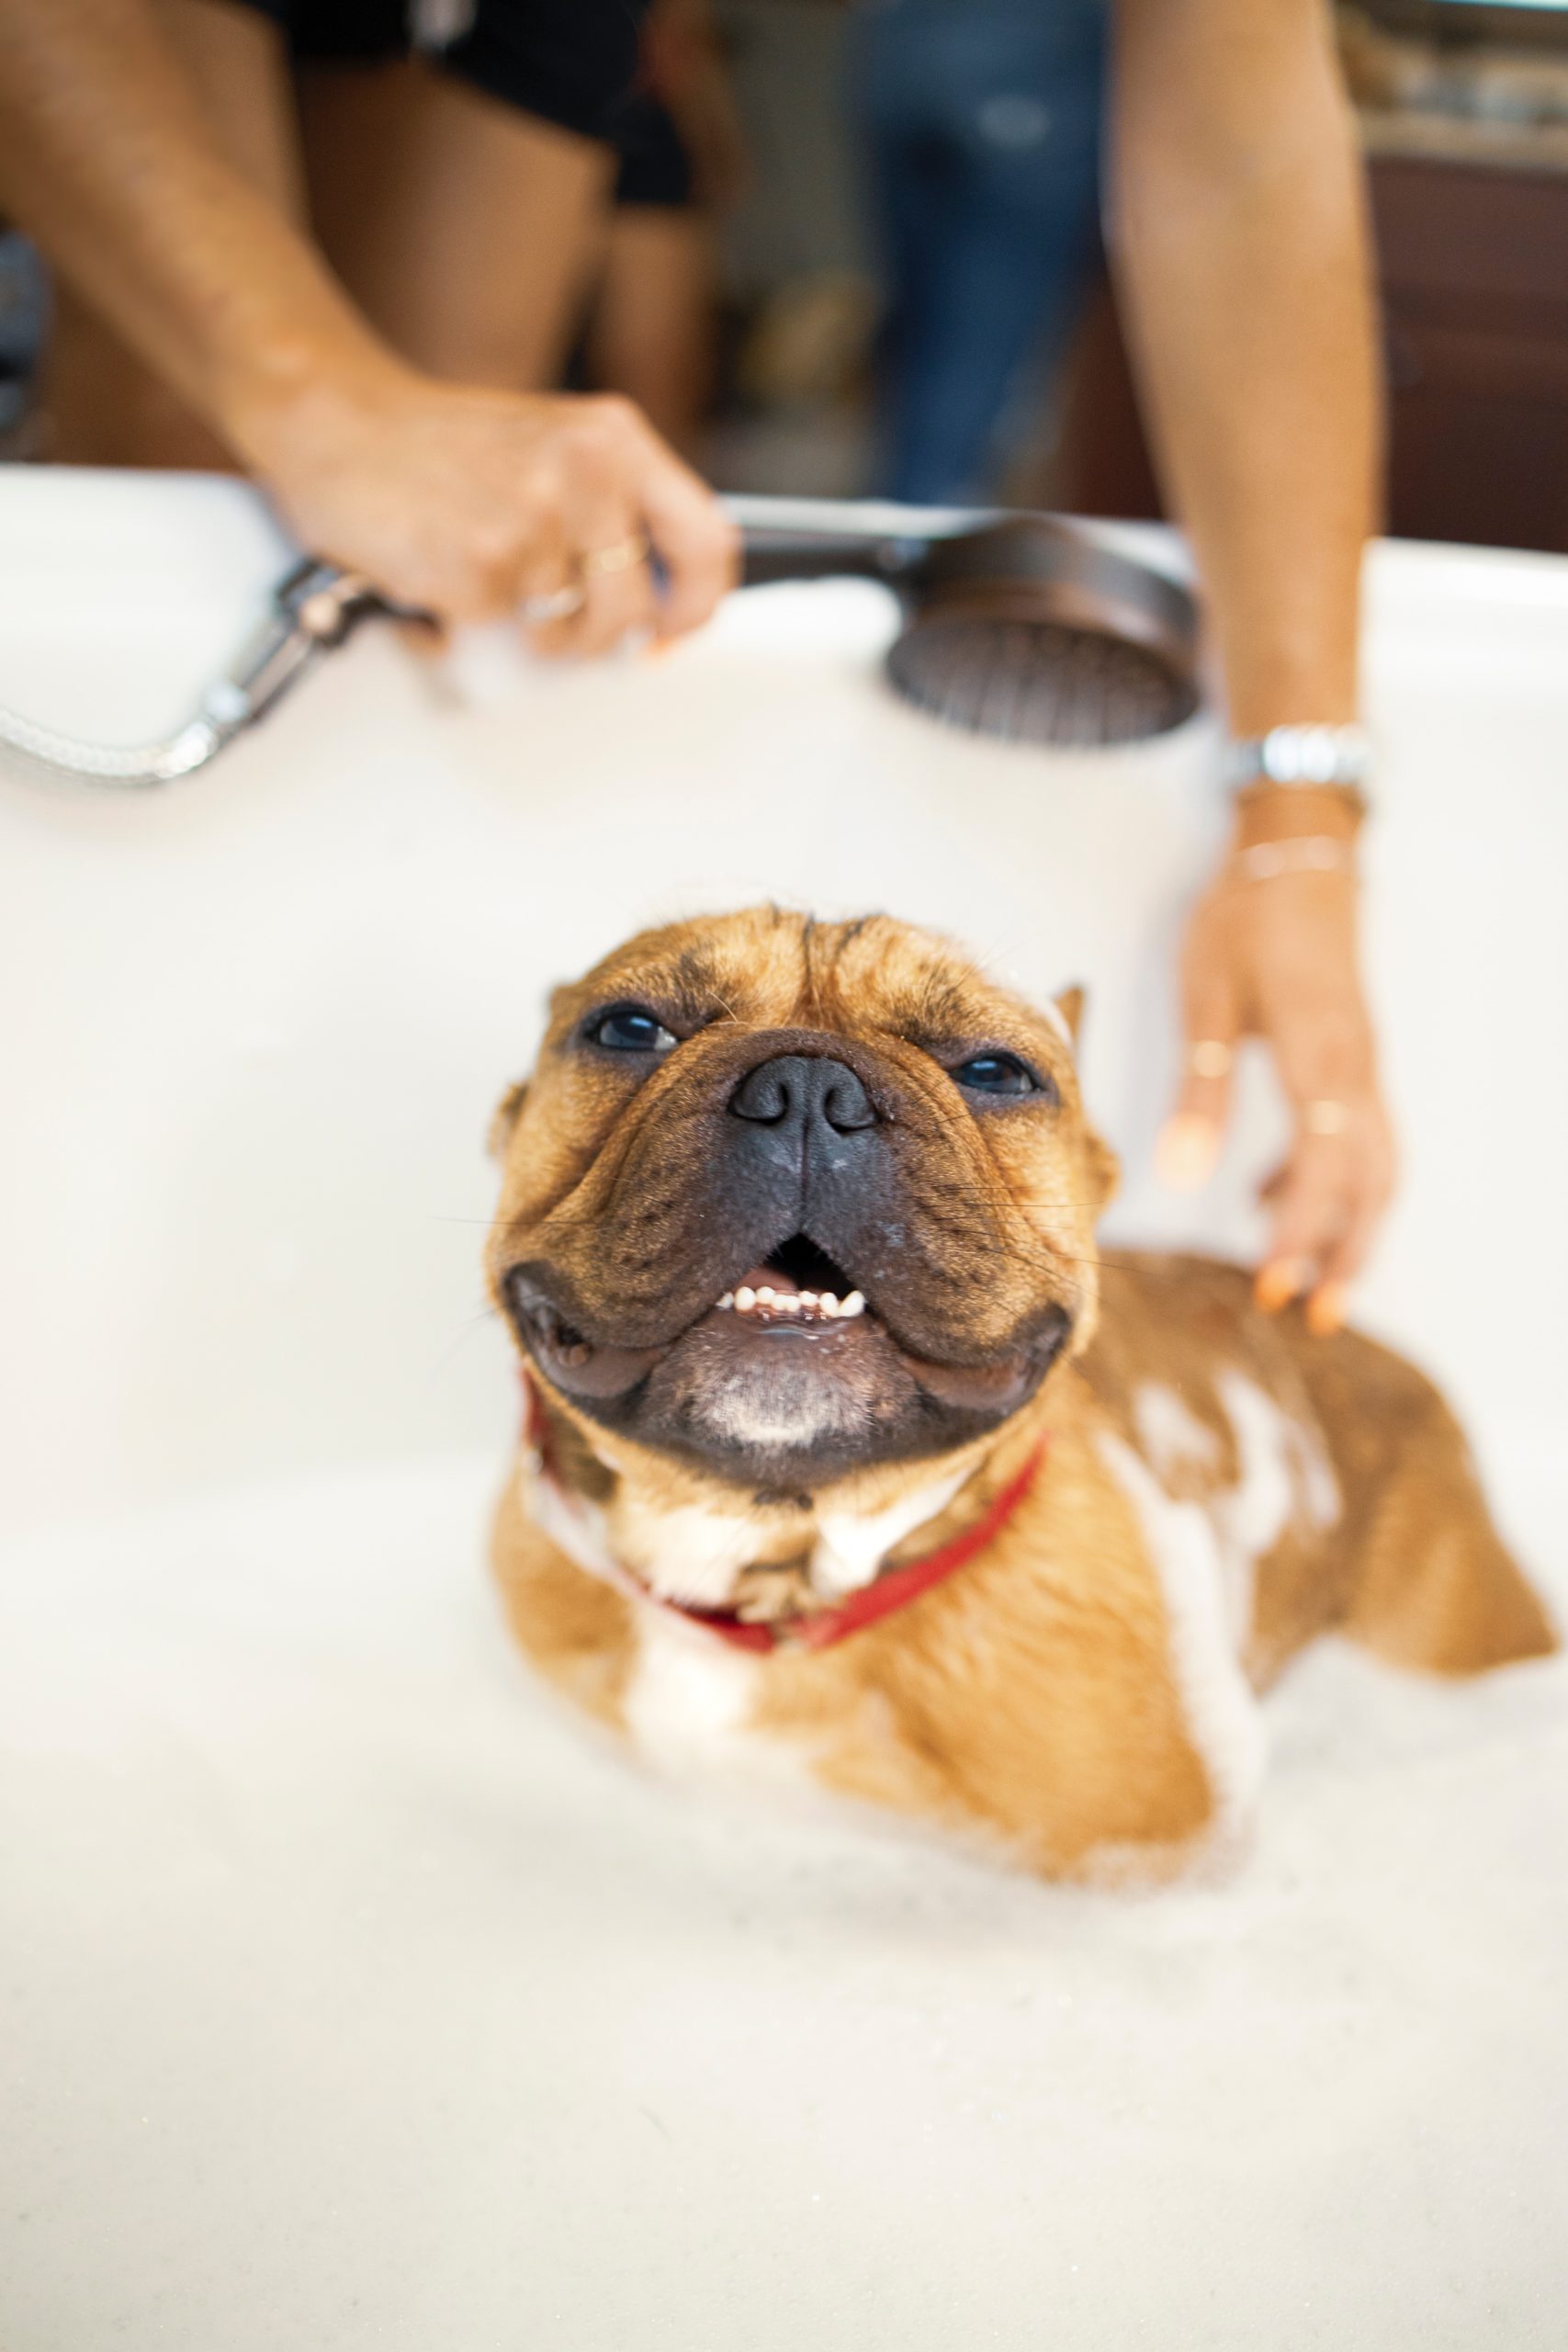 Bathe Your Dog